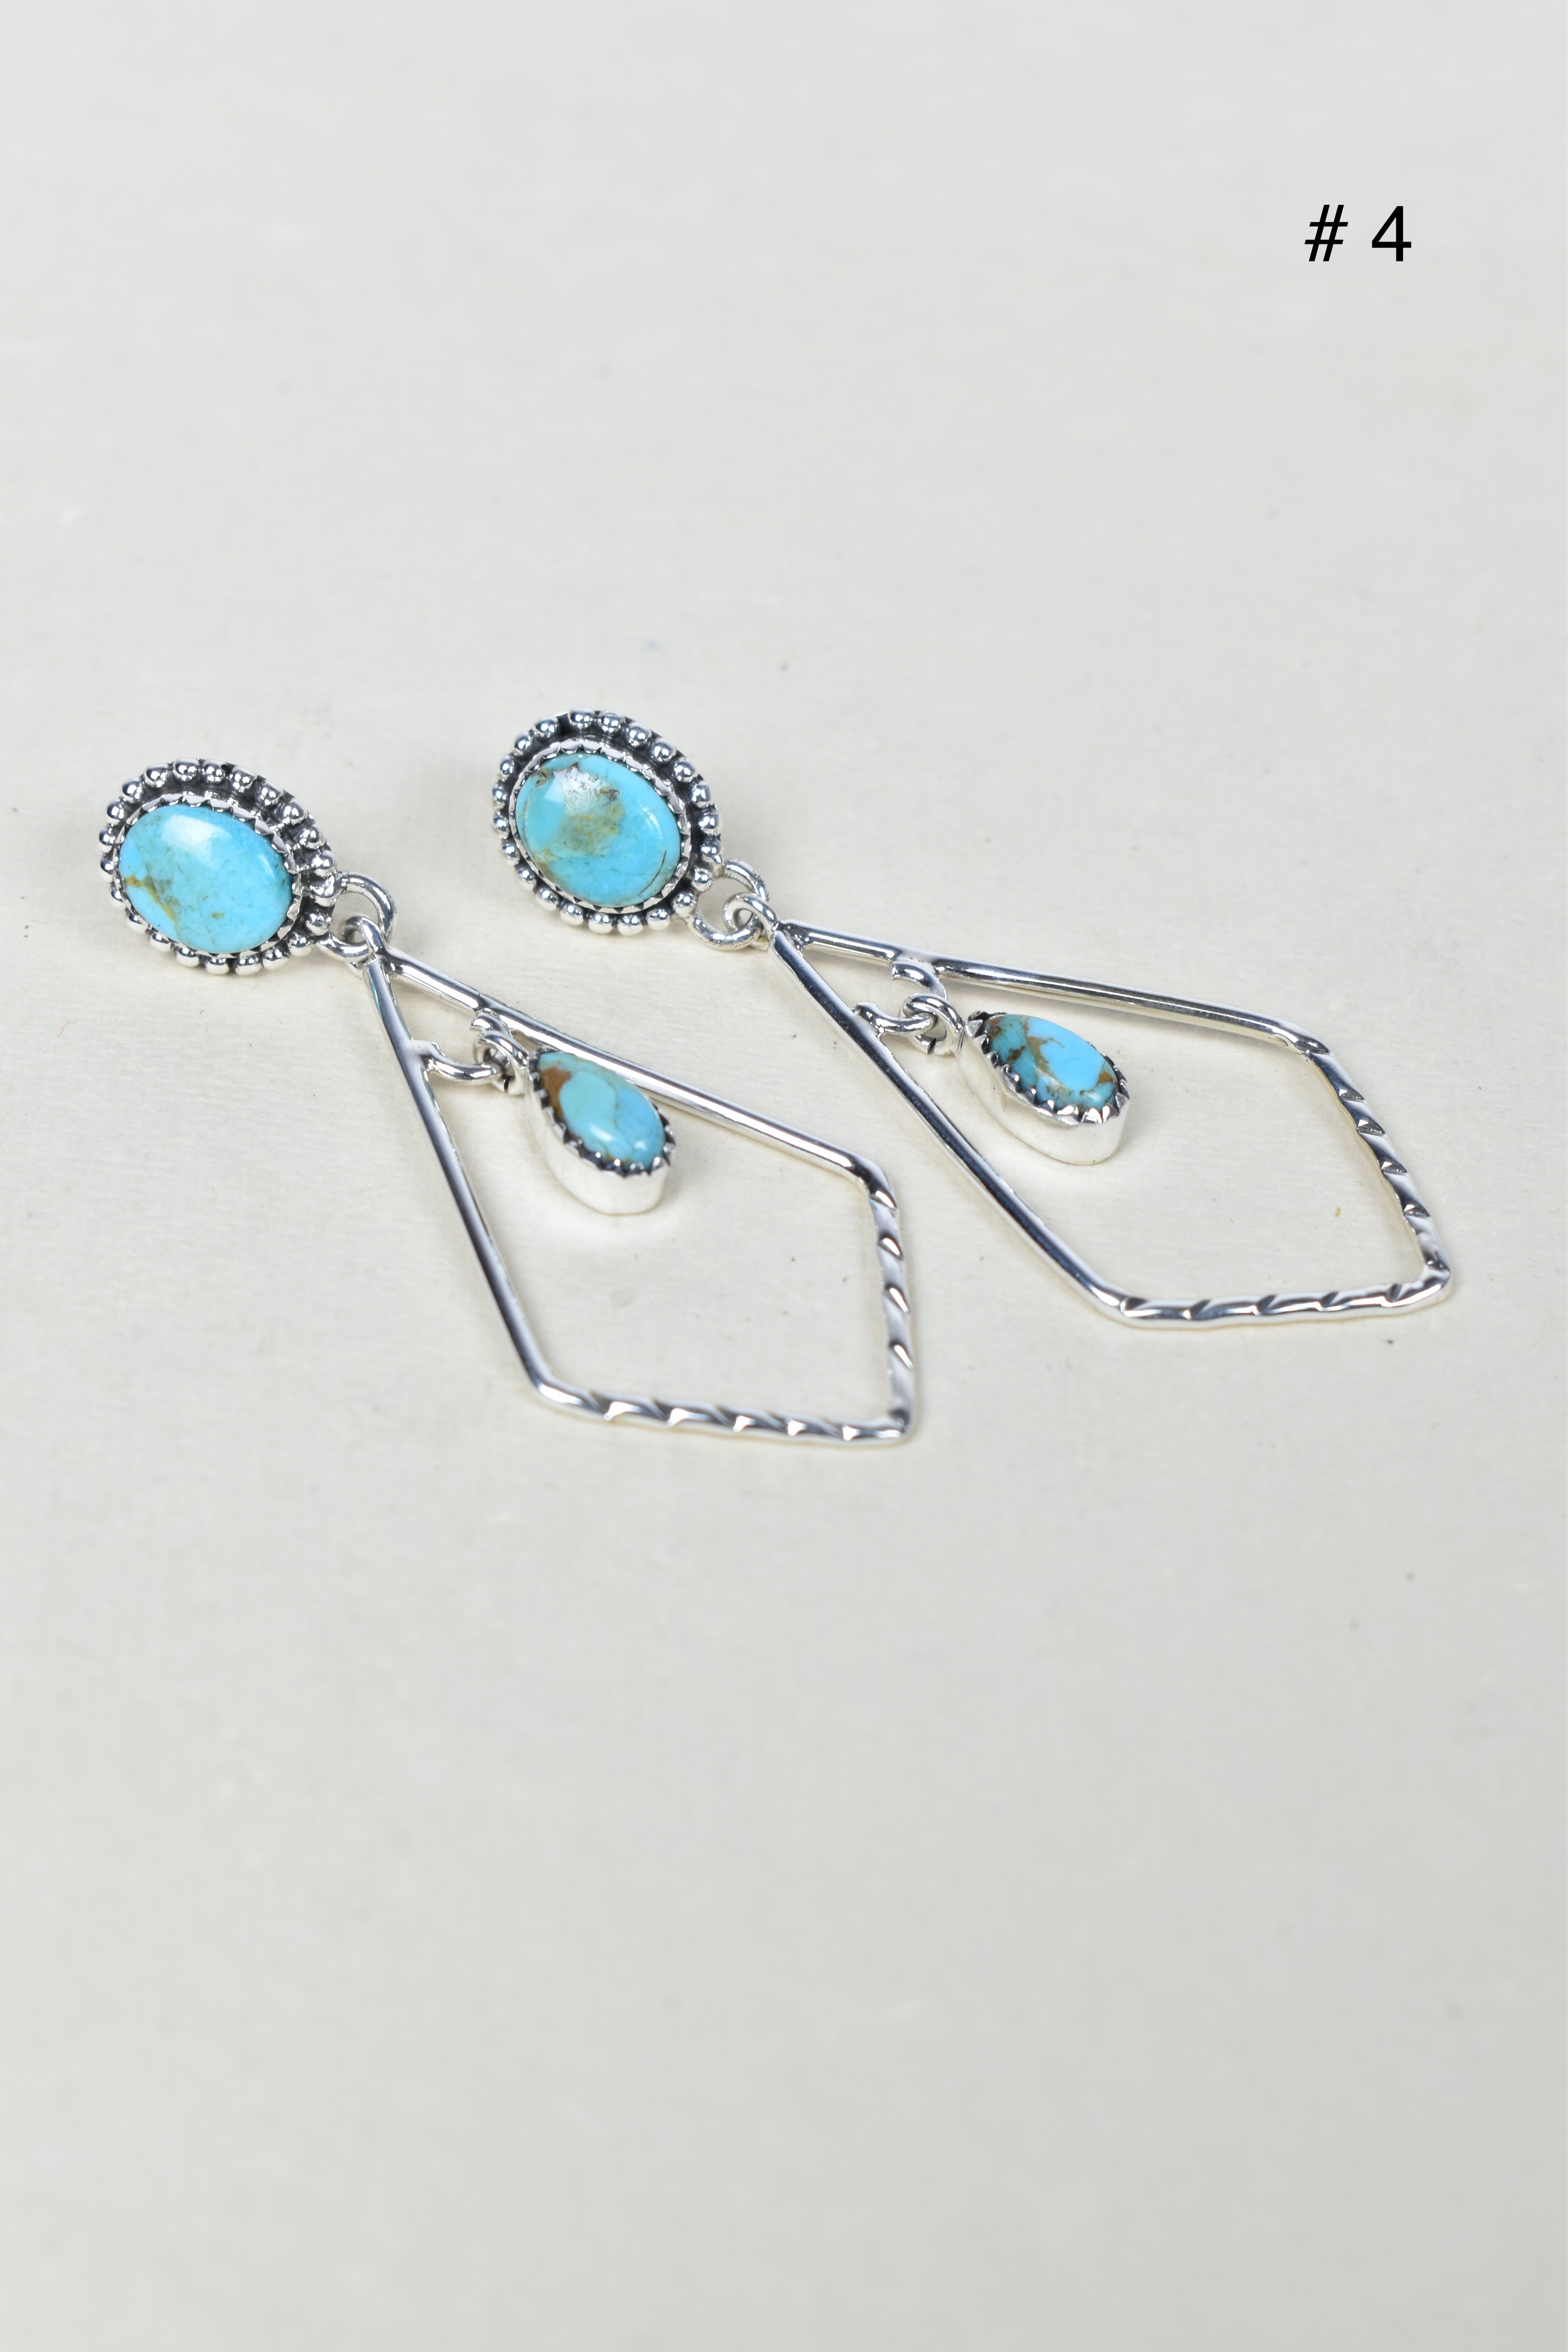 Skyborne Celestial Elegance Dangle Earrings-Drop Earrings-Krush Kandy, Women's Online Fashion Boutique Located in Phoenix, Arizona (Scottsdale Area)